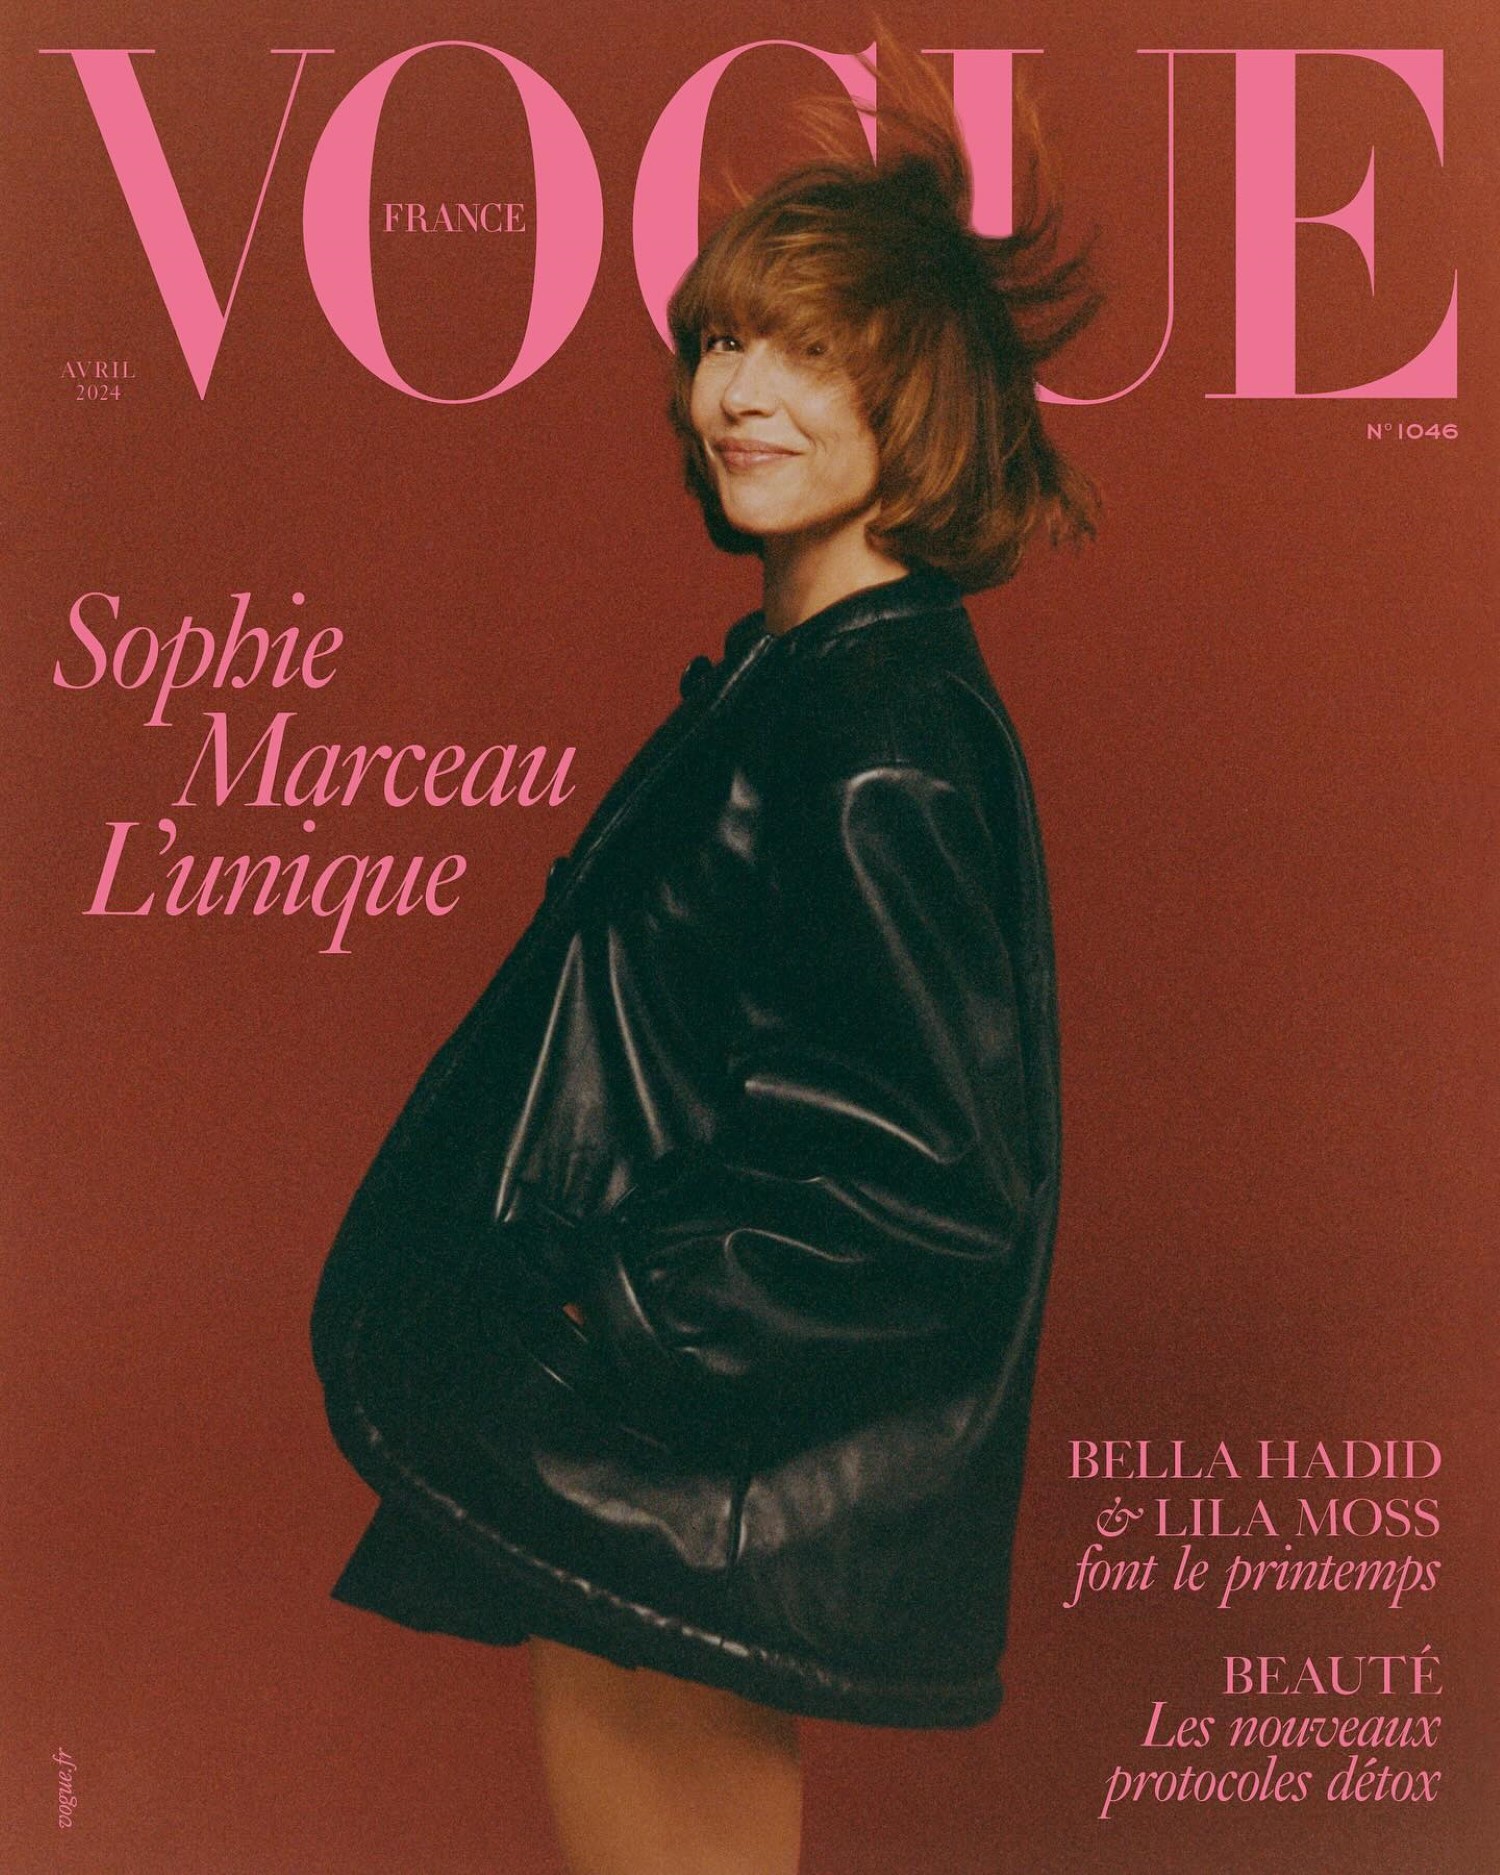 Sophie Marceau covers Vogue France April 2024 by Quentin de Briey